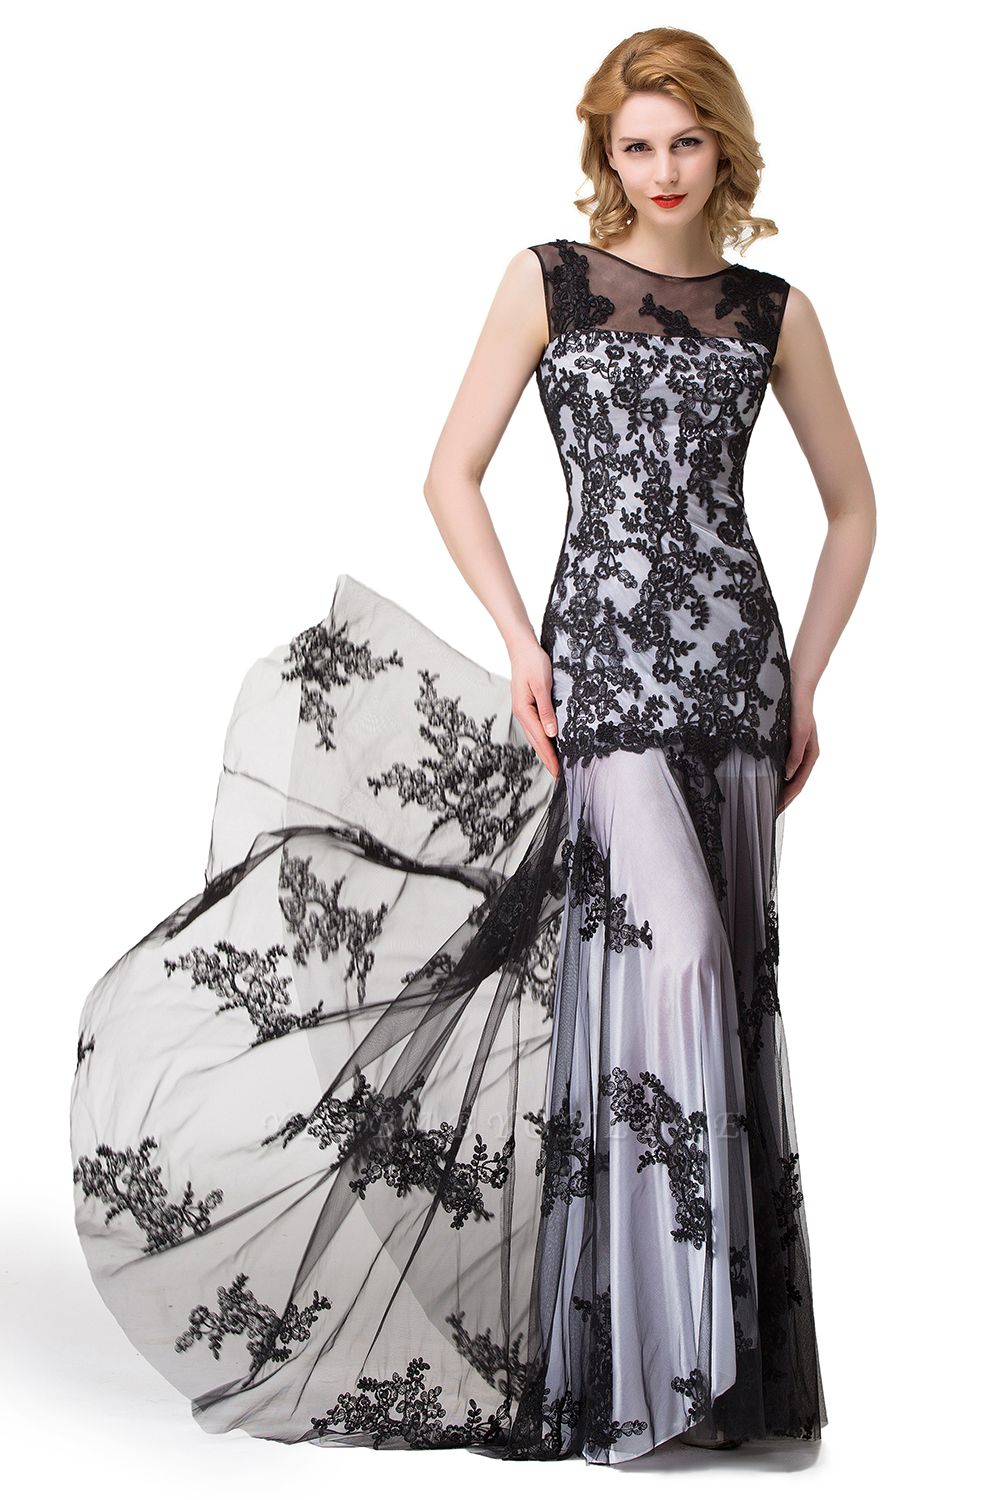 DANIELA Scoop Neck lace Applique Mermaid Black Prom